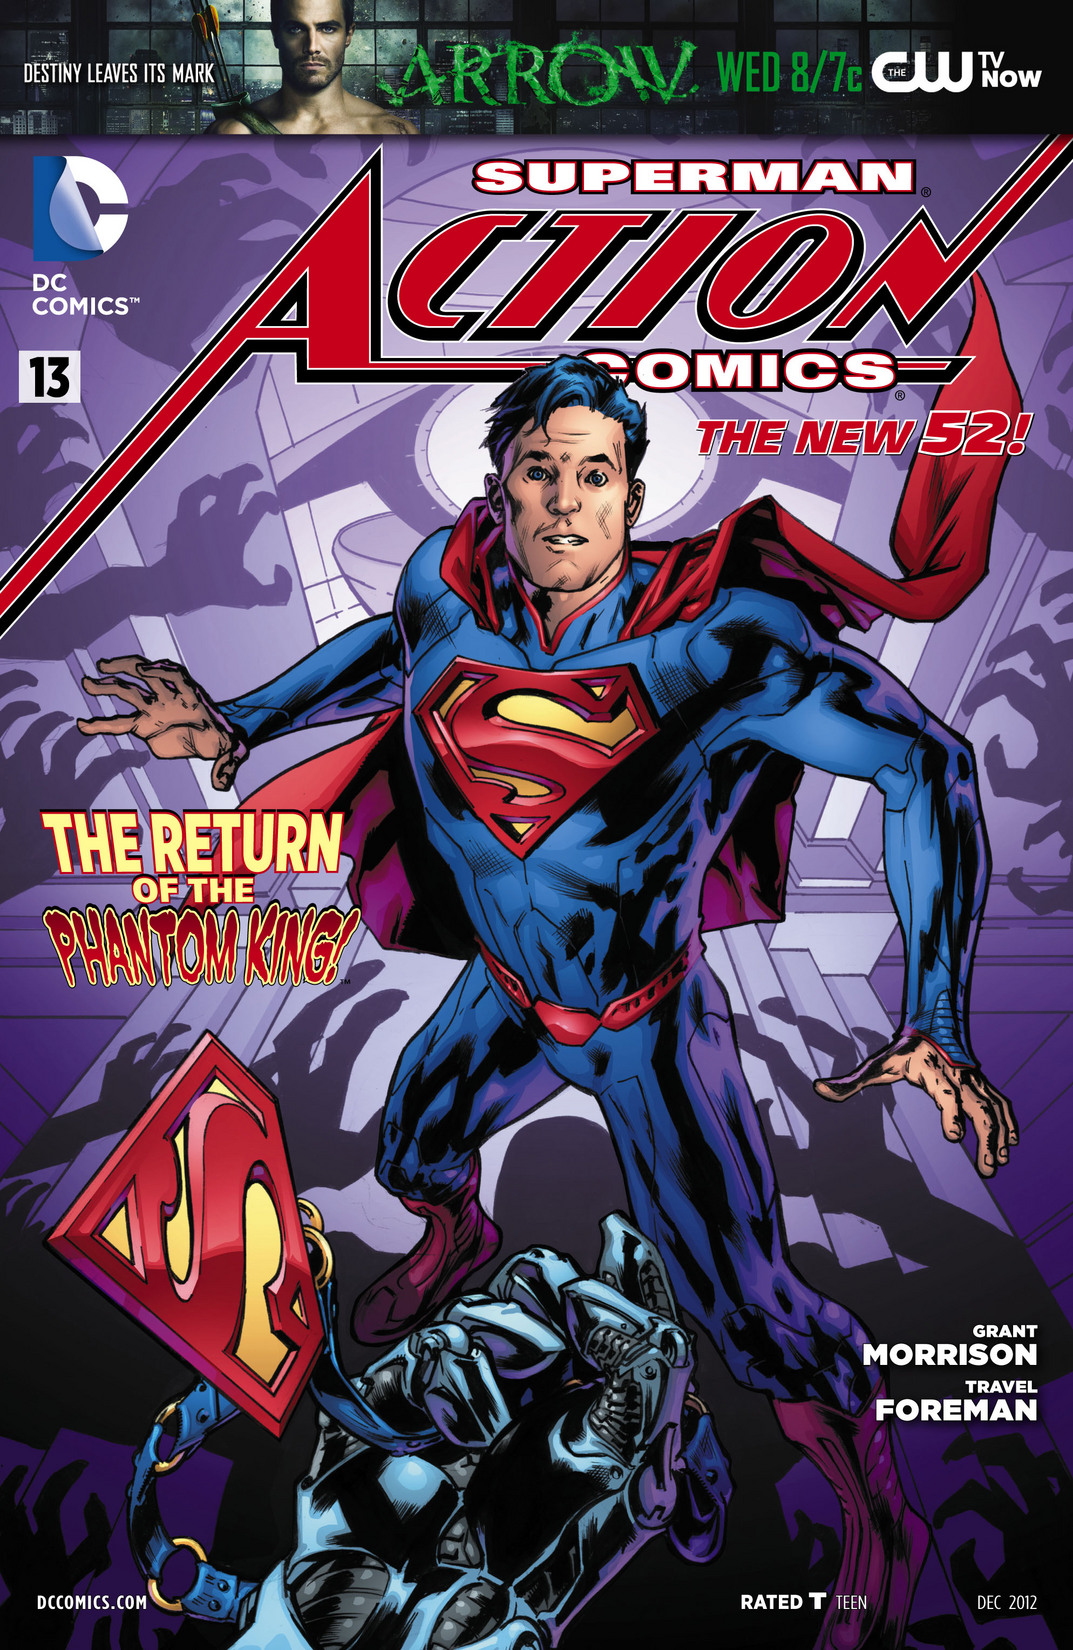 Action Comics Vol. 2 #13